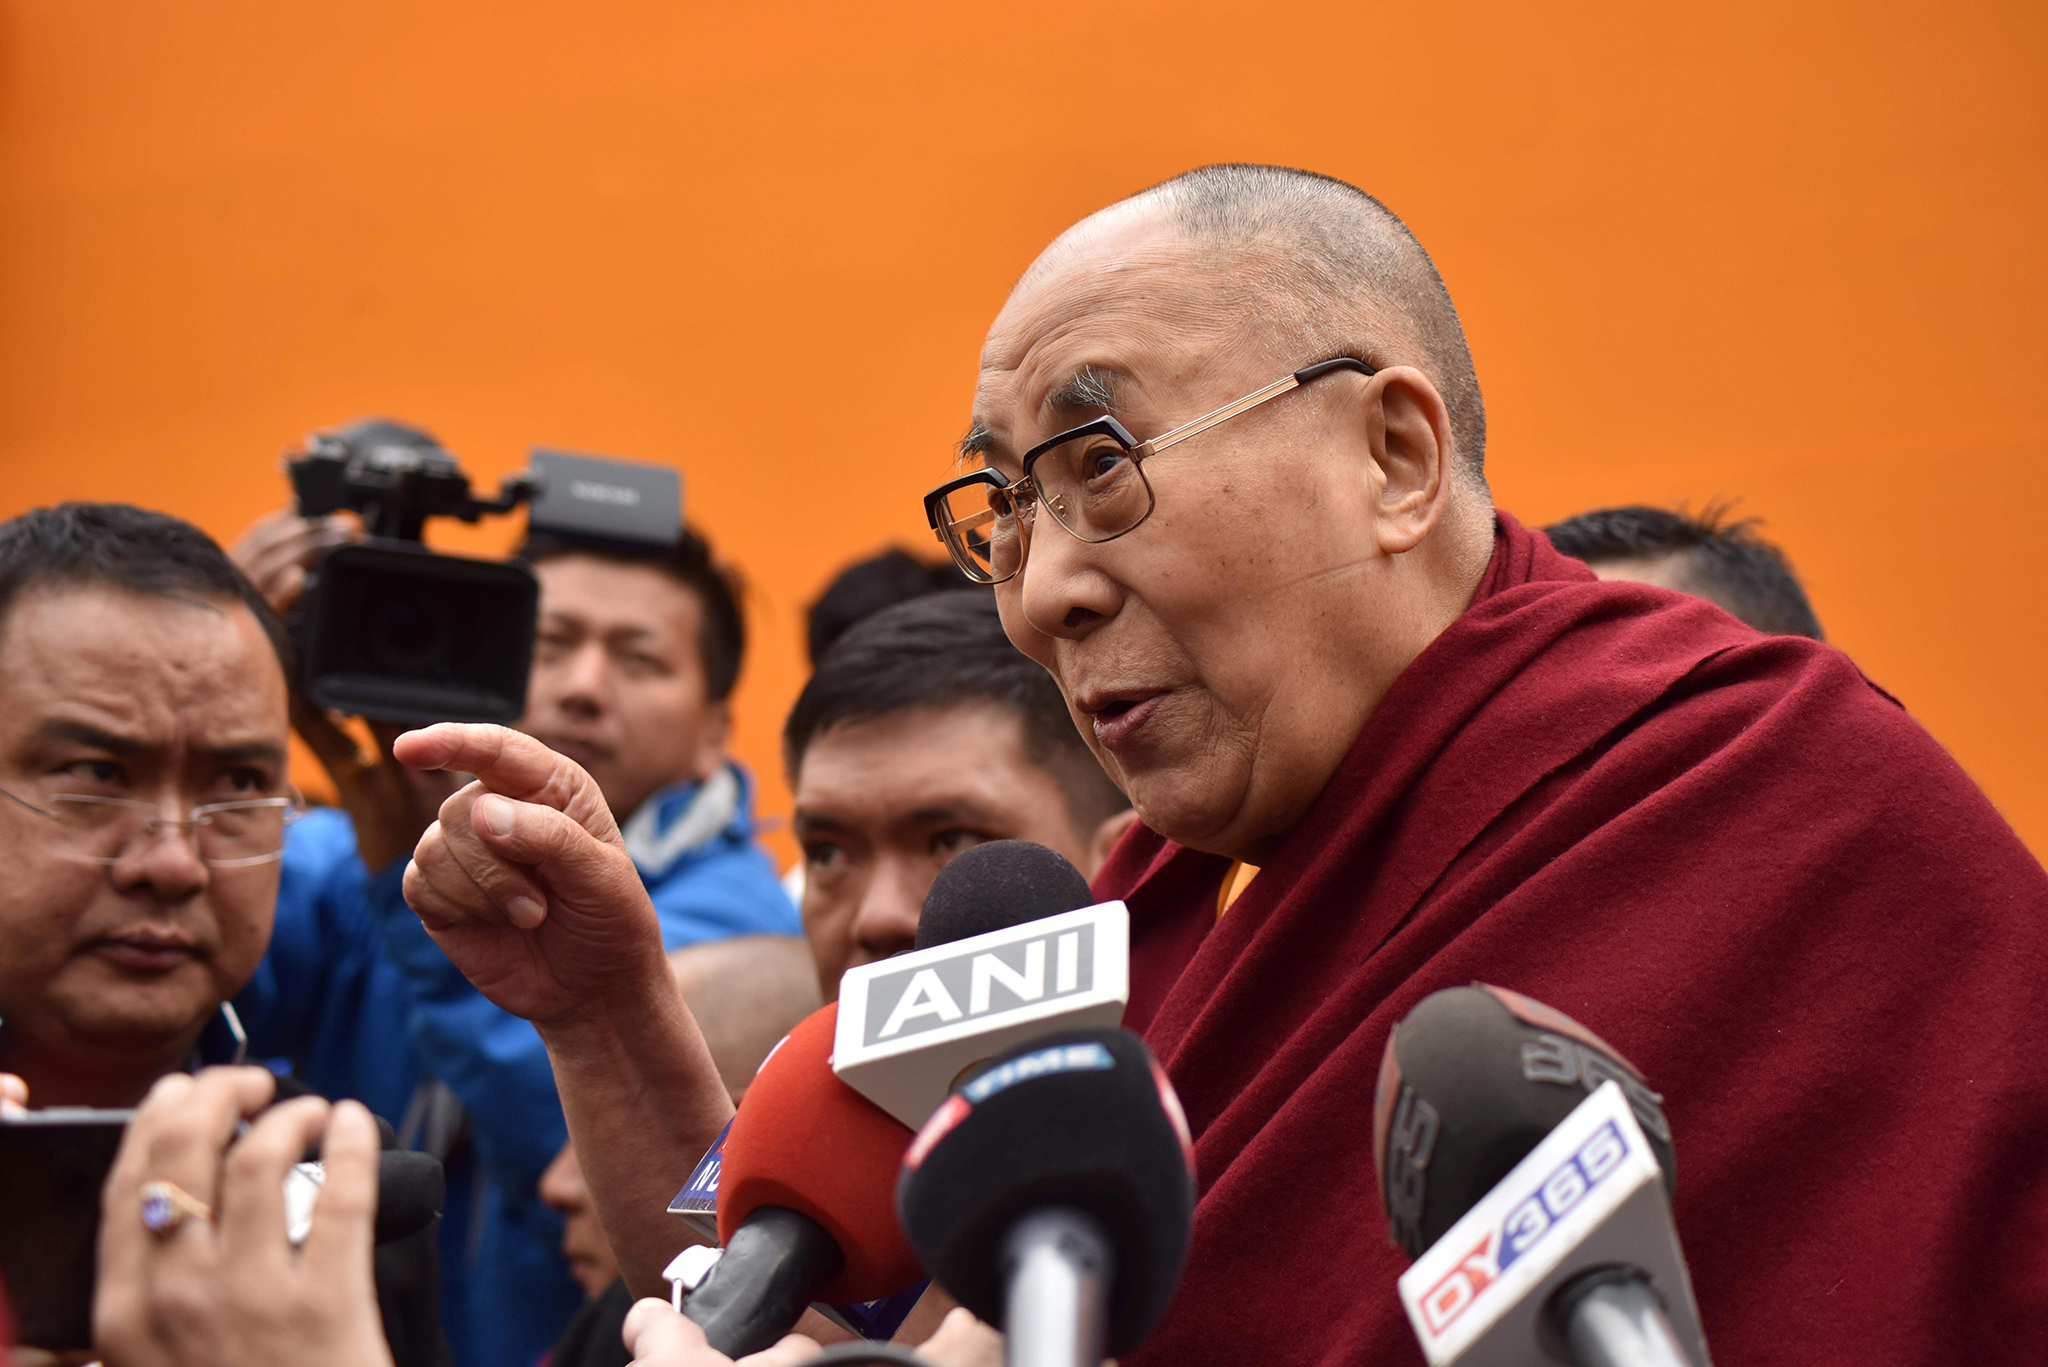 Tibetano auto-imolou-se pelo fogo em apelo ao regresso de Dalai Lama